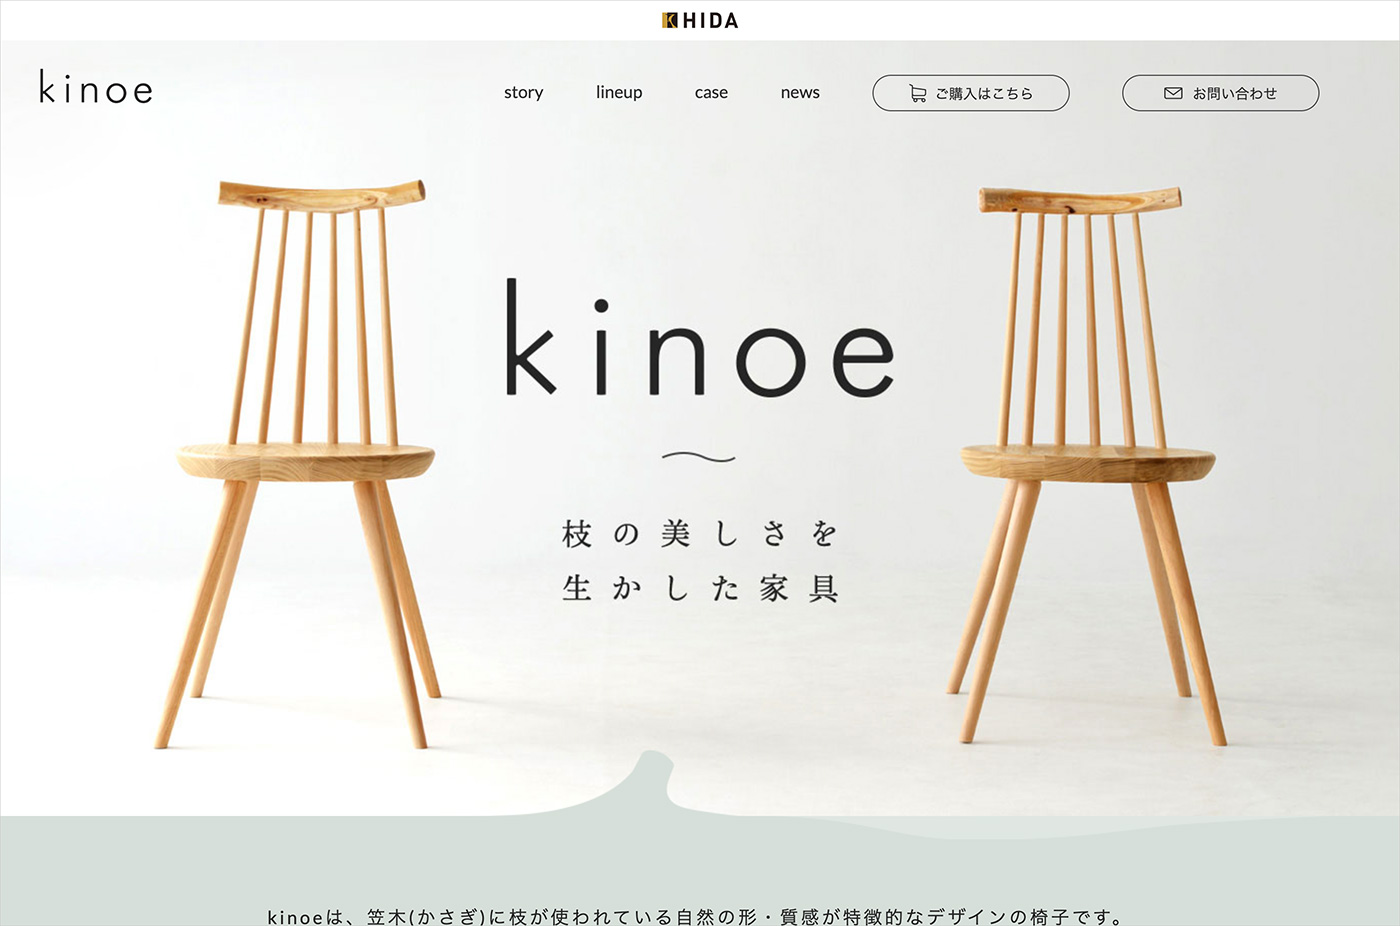 kinoe | 飛騨産業株式会社ウェブサイトの画面キャプチャ画像